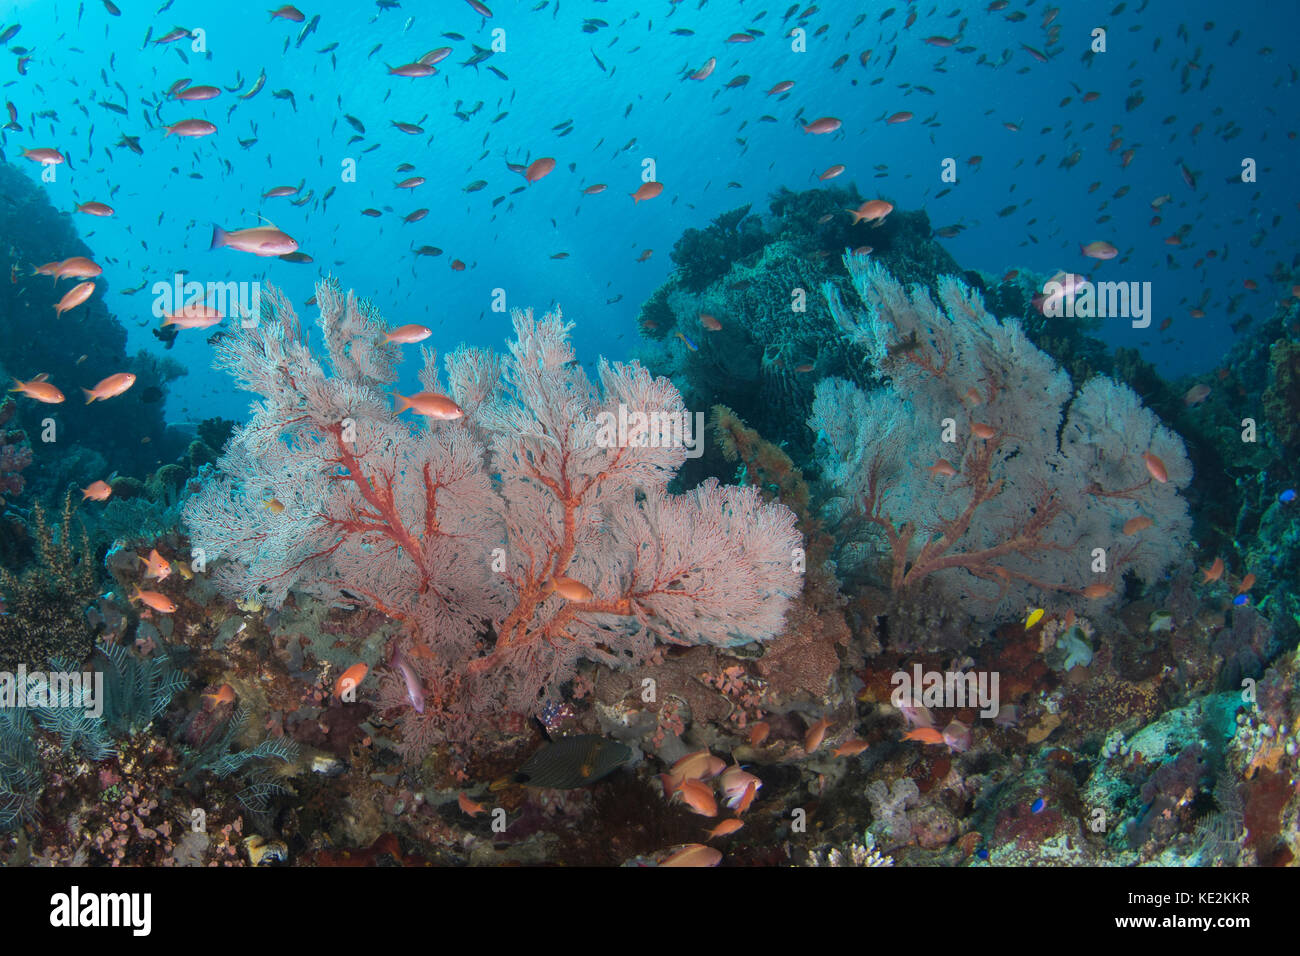 Reef scene in Komodo National Park, Indonesia. Stock Photo